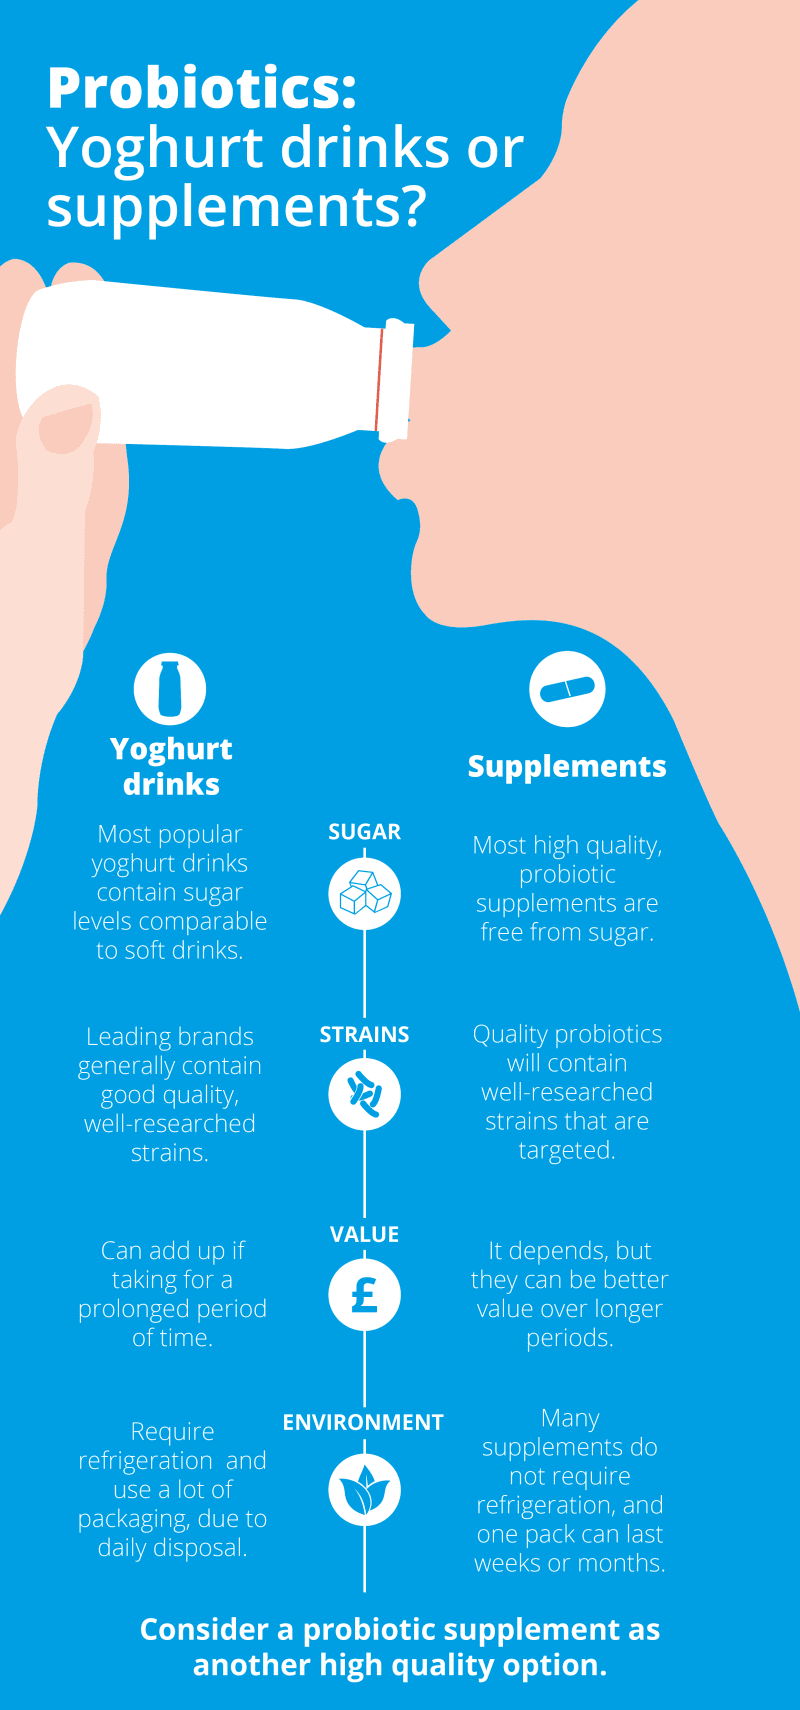 Probiotics supplements versus yoghurt drinks